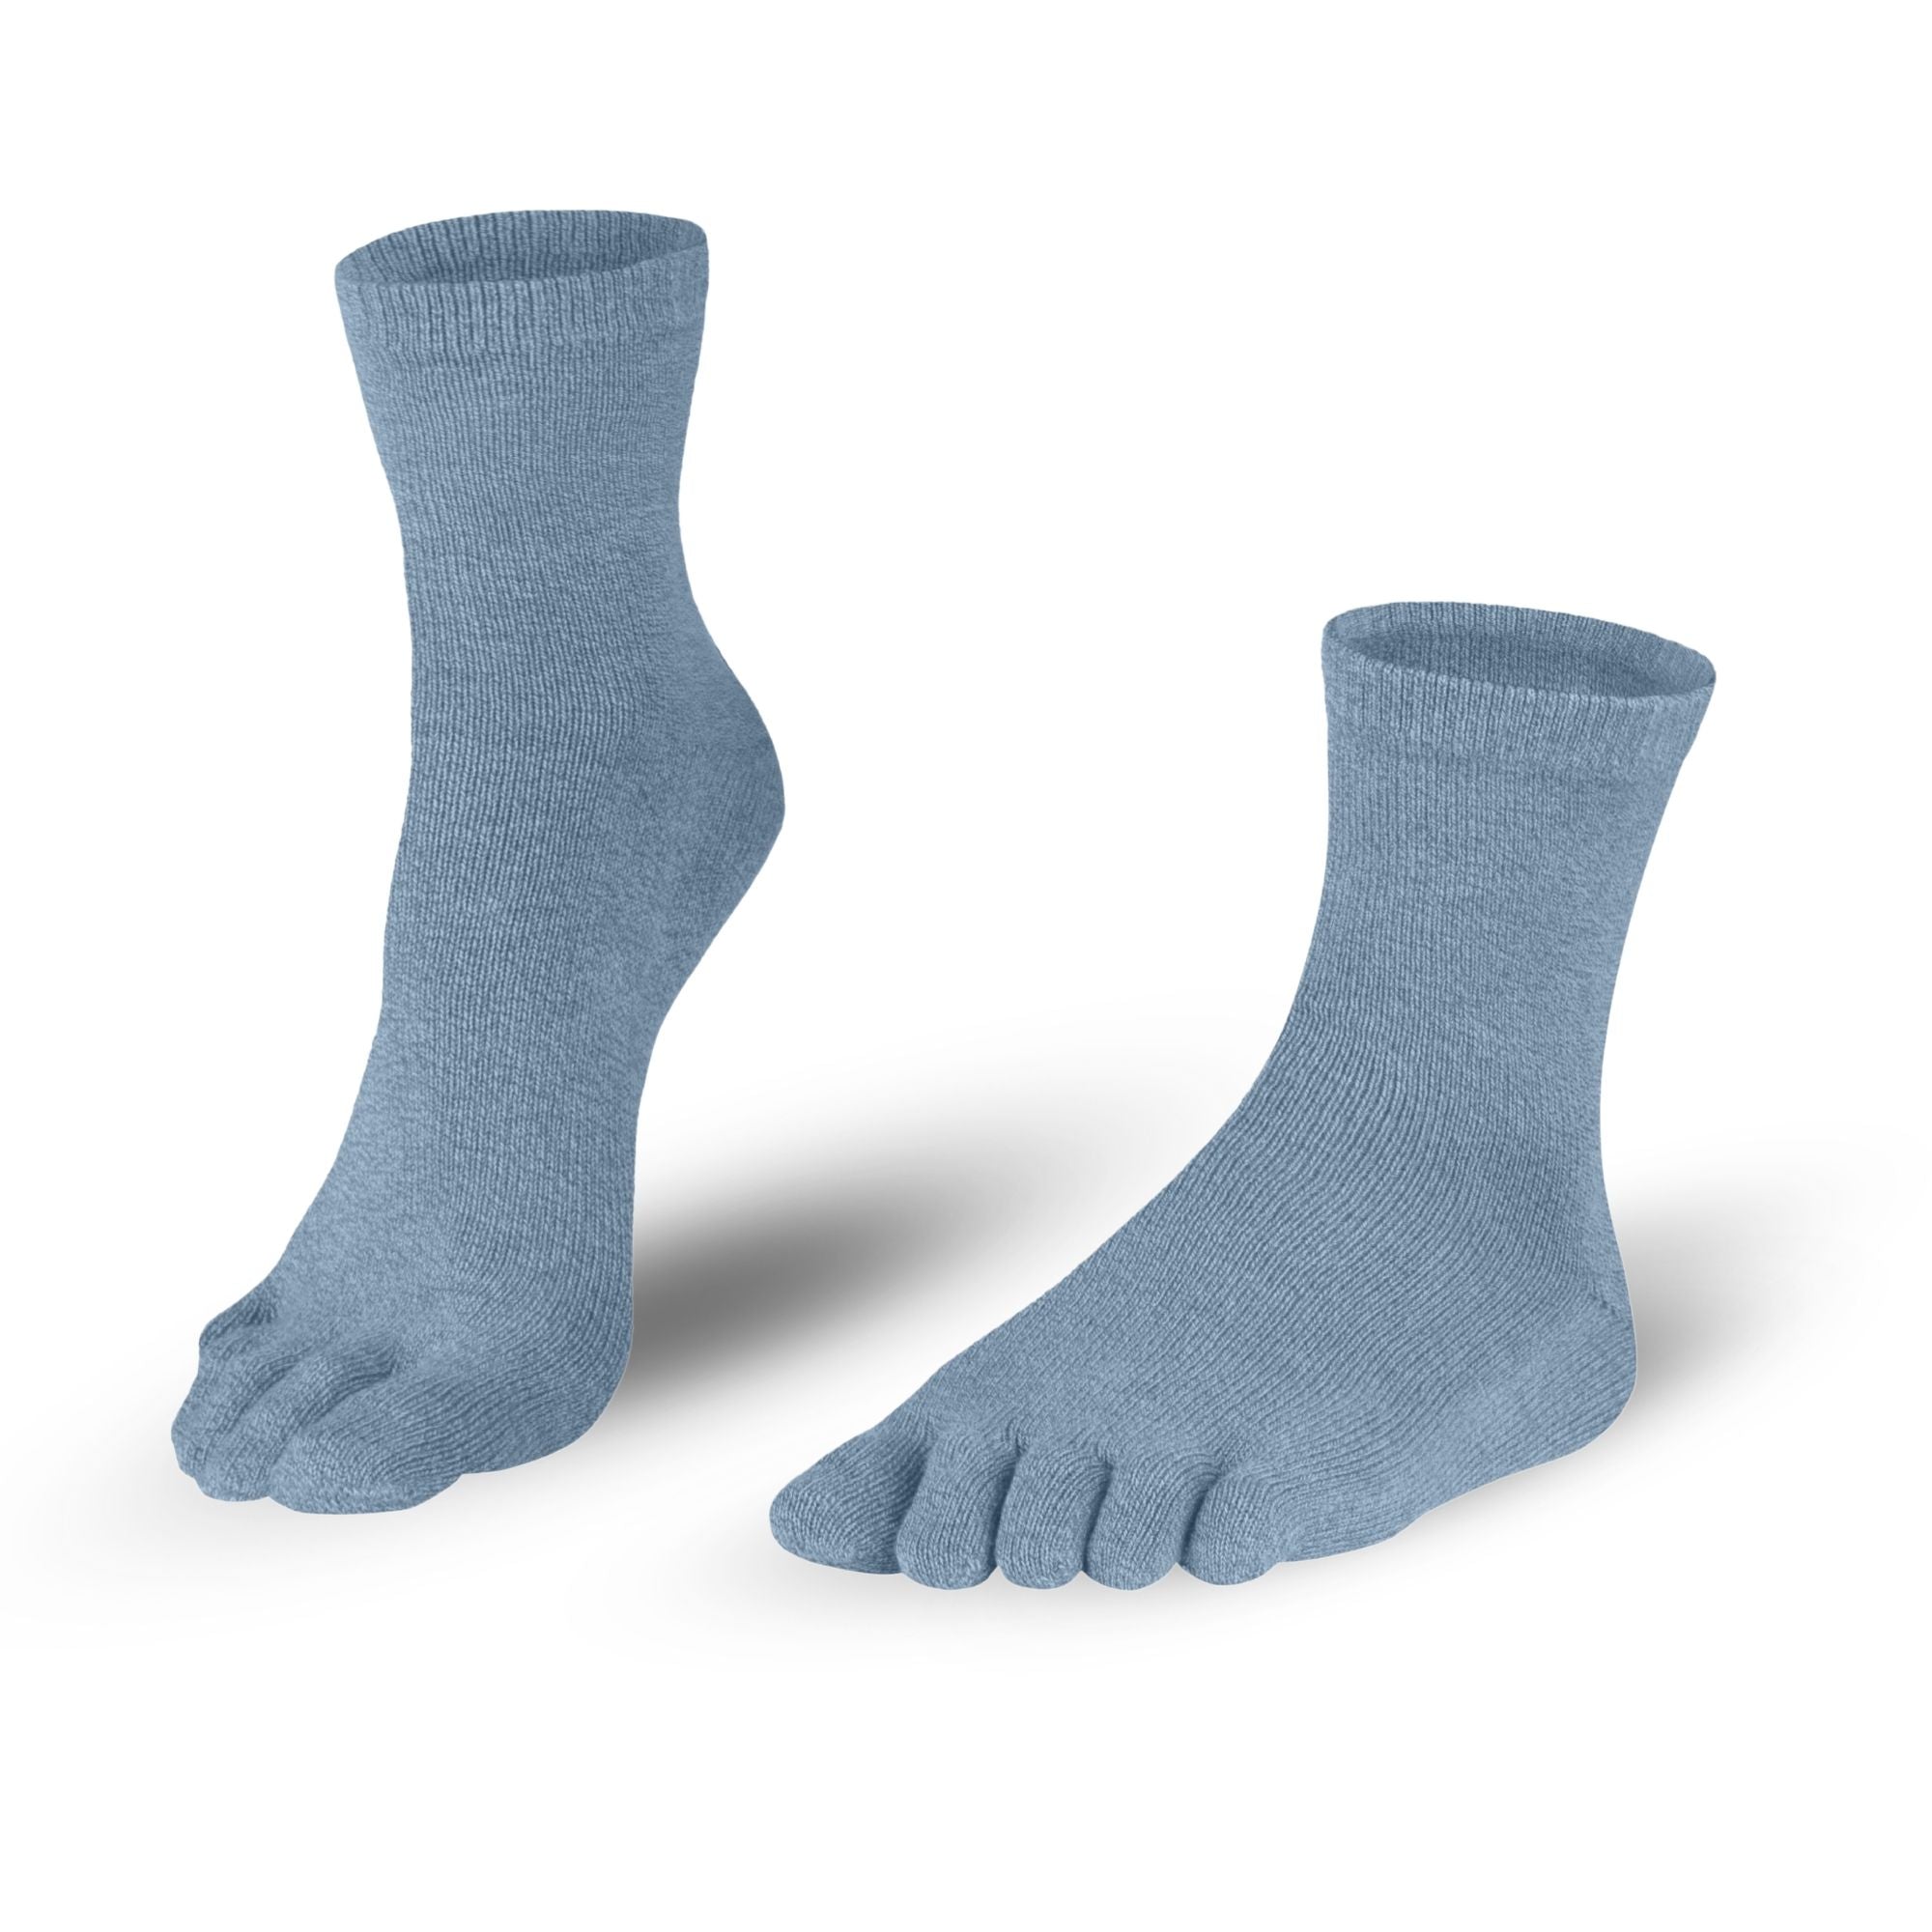 Calcetines de algodón en azul-gris para señoras y caballeros